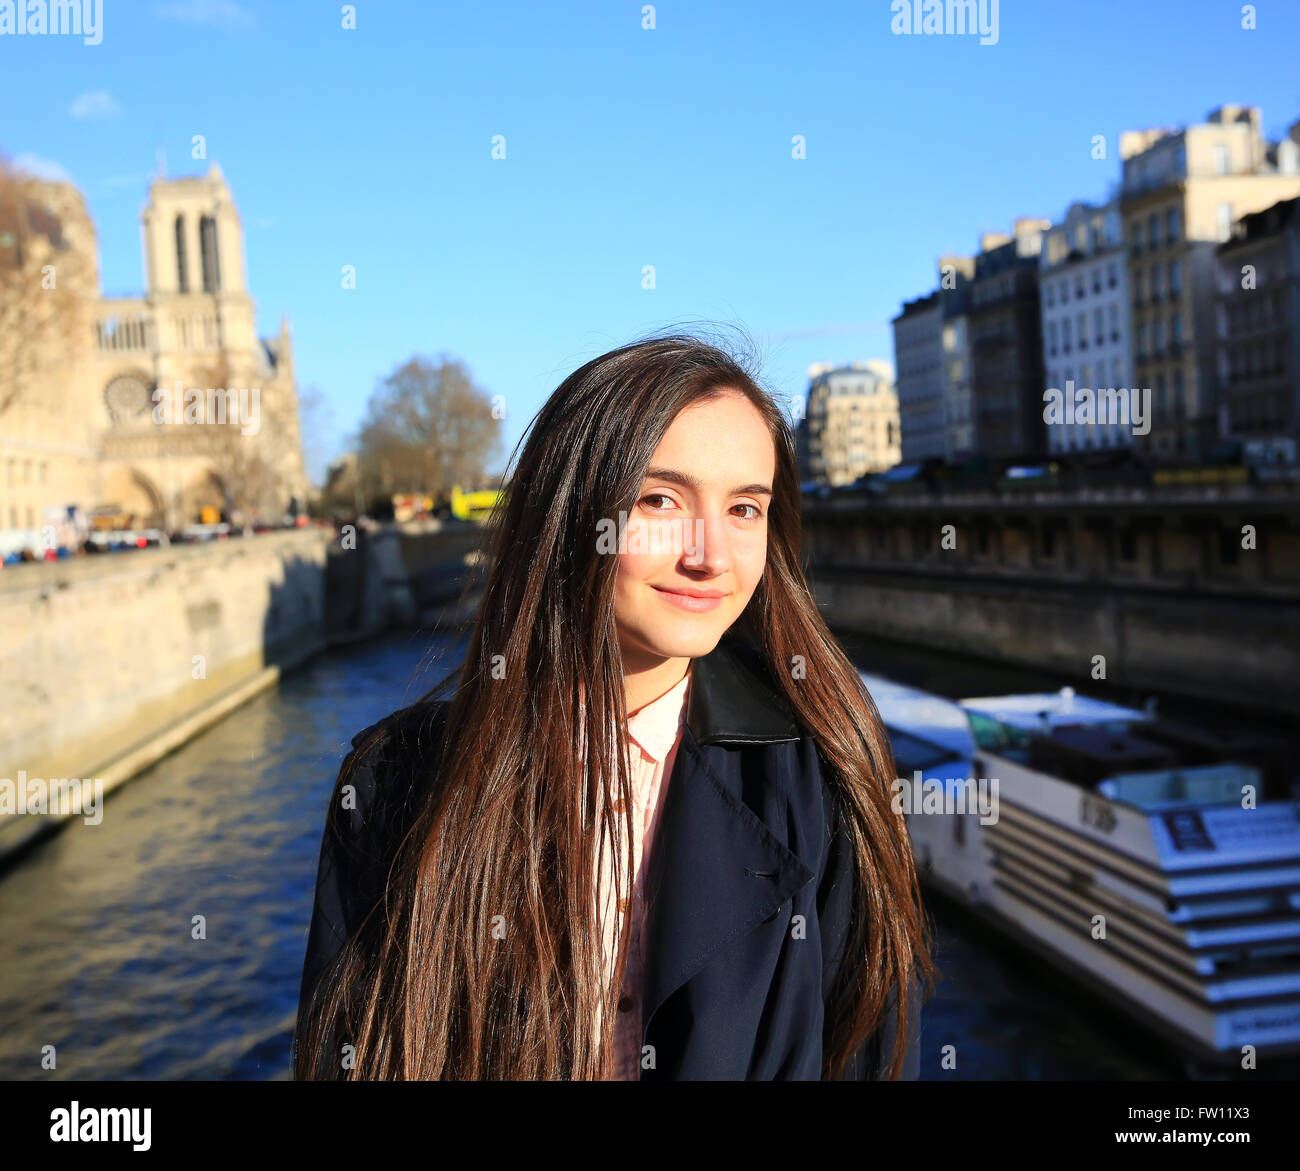 Portrait de jeune fille à Paris, France Banque D'Images